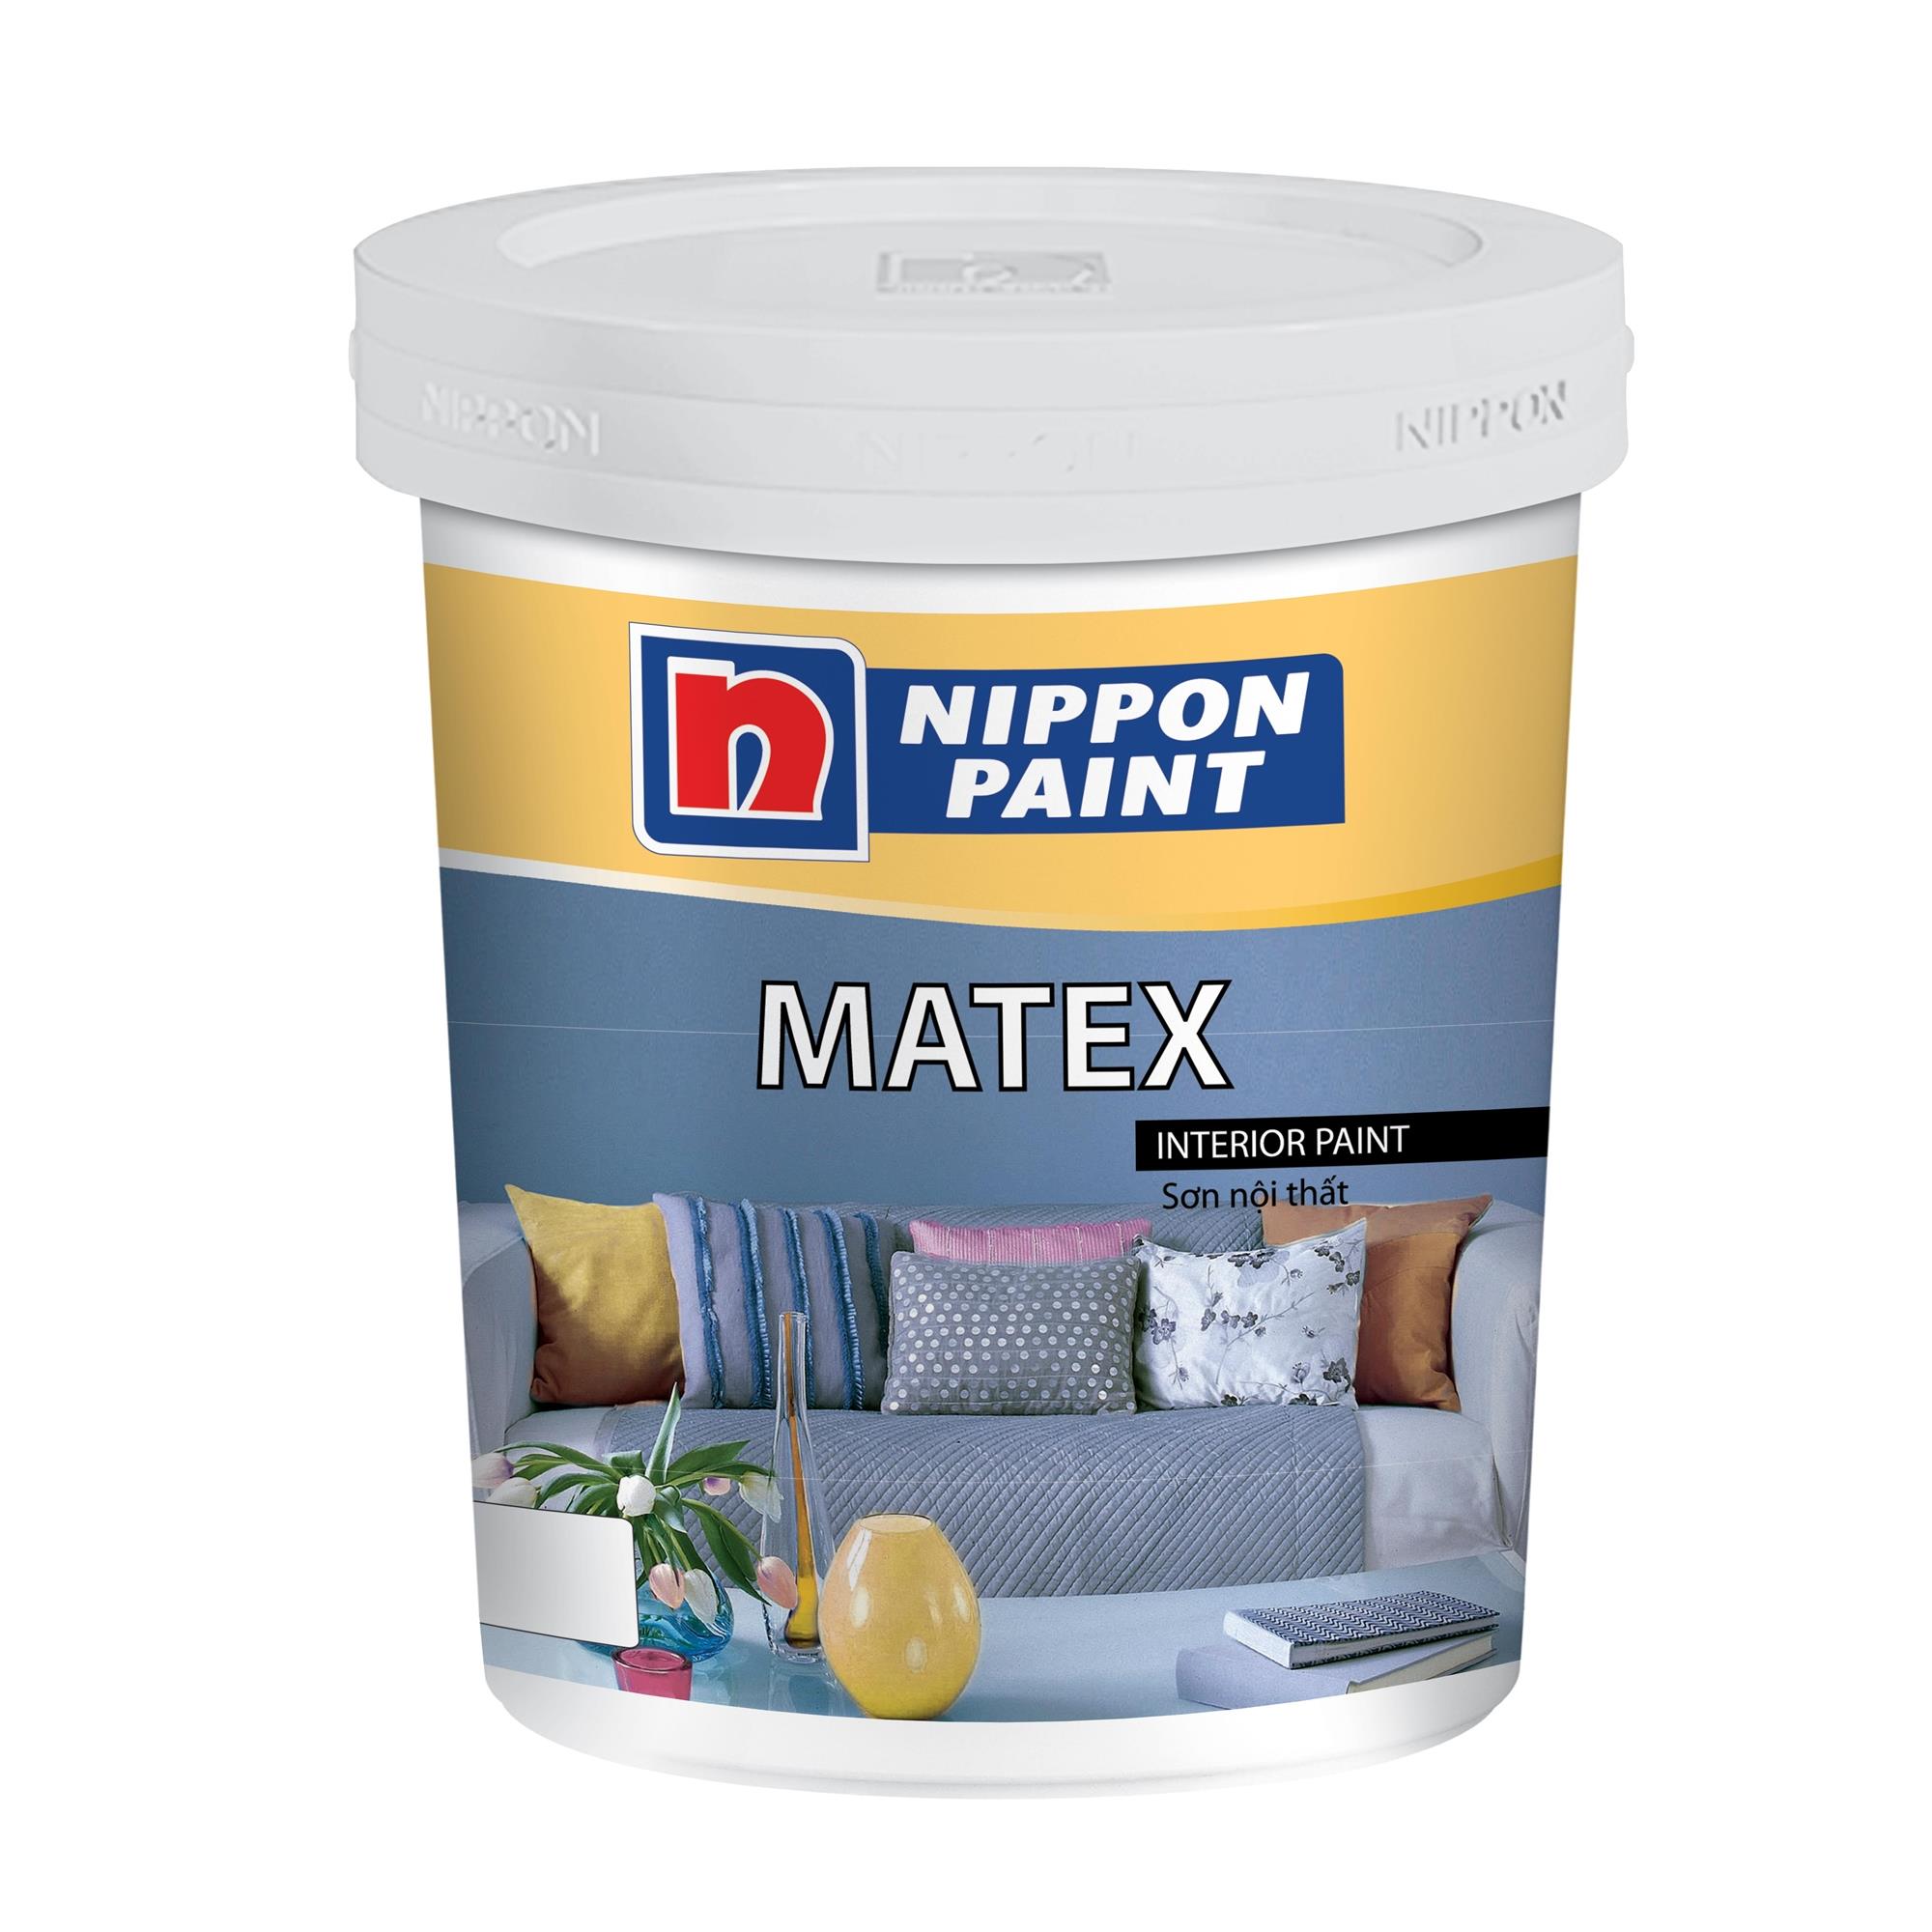 Sơn Nippon Matex nội thất - Sơn Nippon Matex nội thất là giải pháp tối ưu cho chiếc nhà của bạn. Không chỉ đẹp mắt mà còn chống bám bụi và dễ dàng vệ sinh. Xem hình ảnh để tìm hiểu thêm về sản phẩm này.